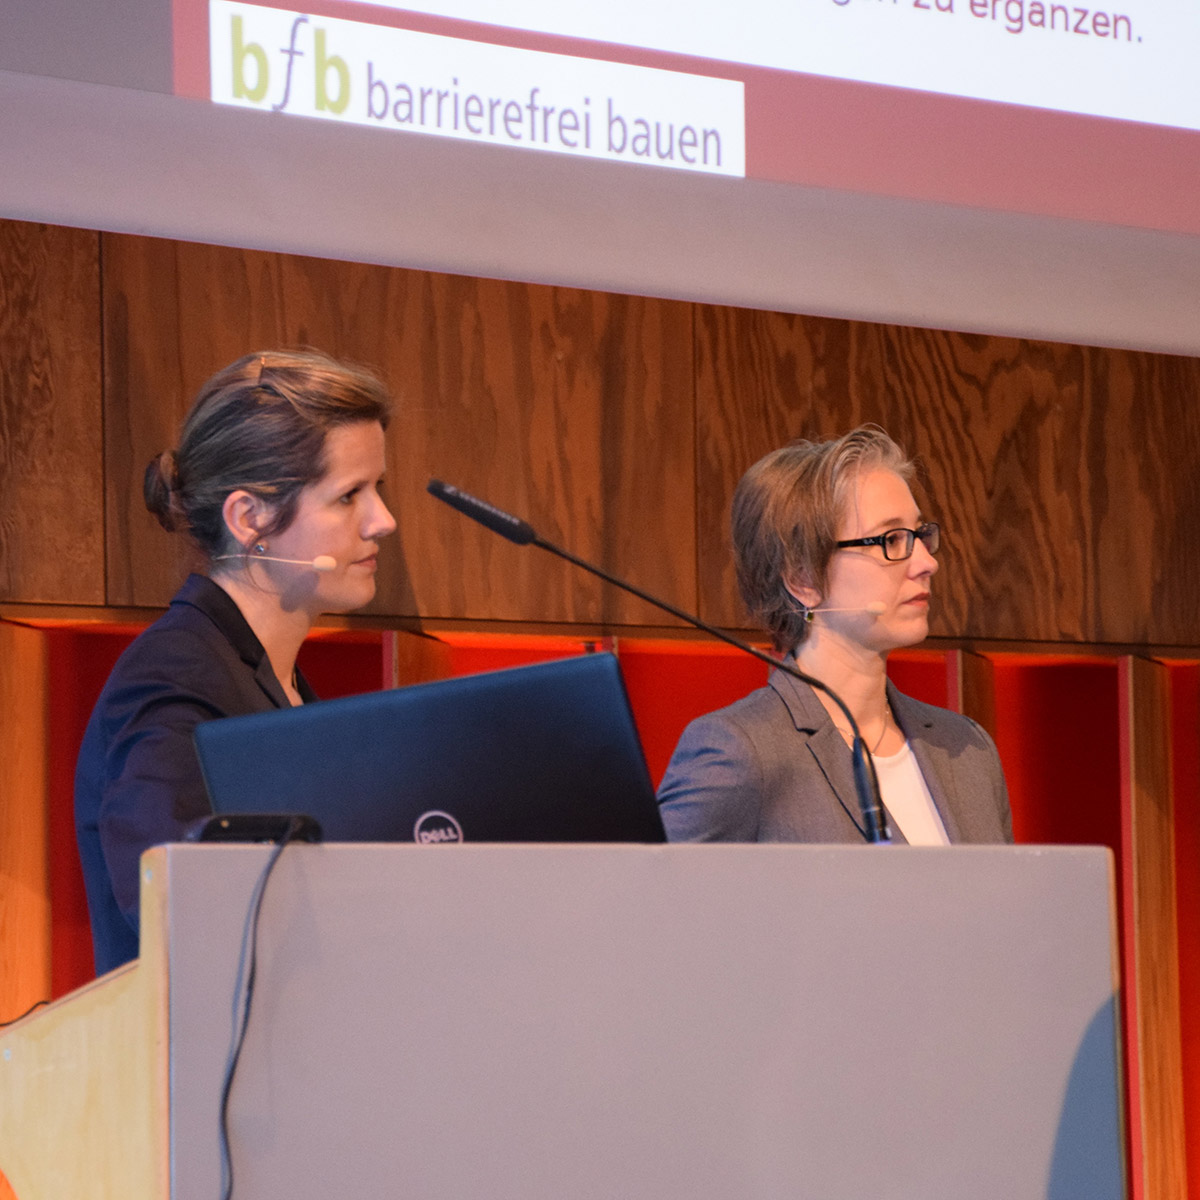 Stephanie Dietel in einer Fragerunde im Rahmen des bfb Seminars 2019 zum barrierefreien bauen.